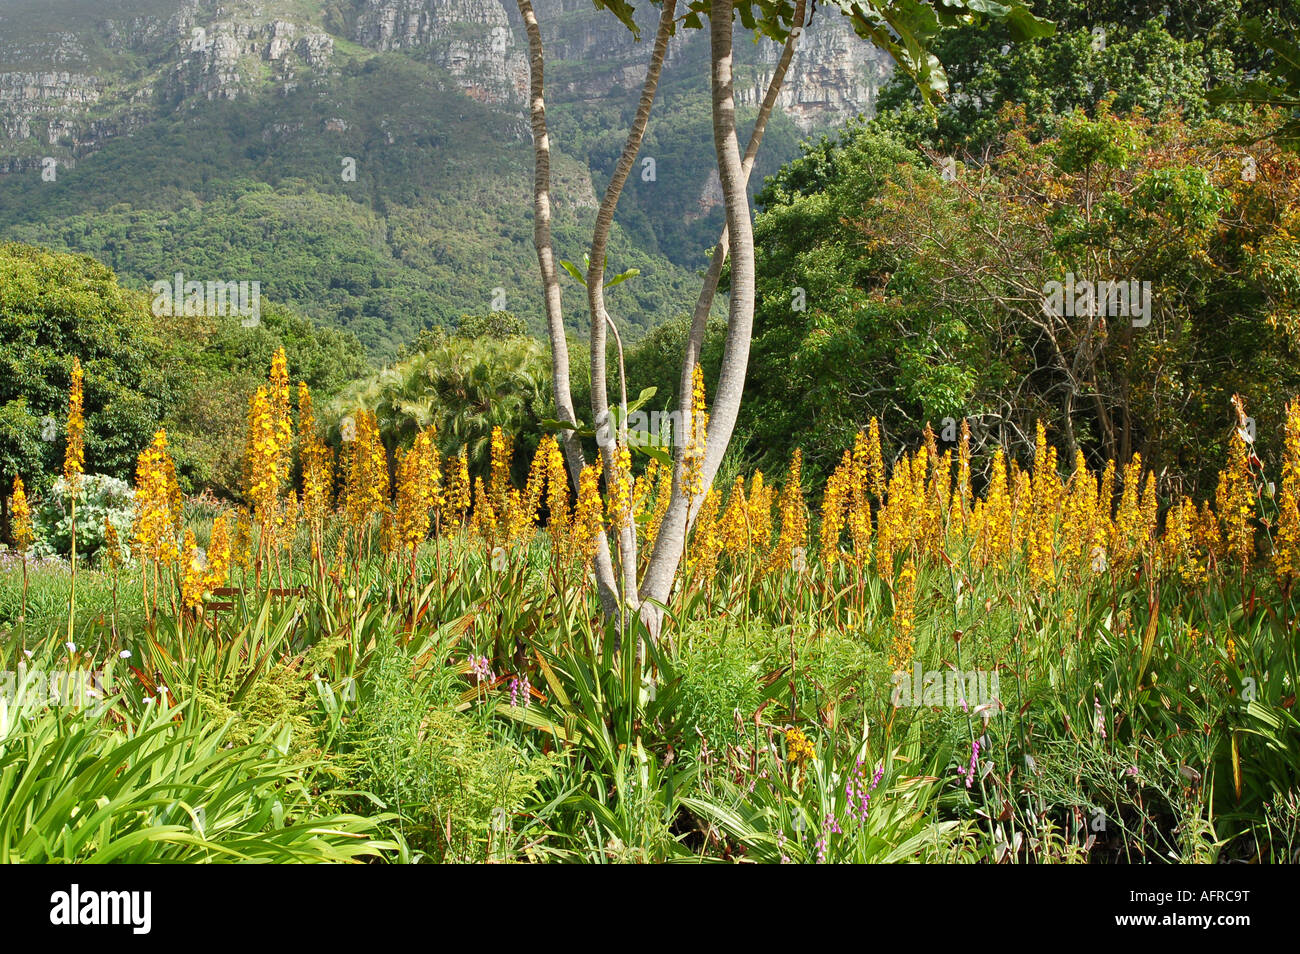 Wachendorfia thyrsiflora National botanic garden Kirstenbosch Cape town South Africa Stock Photo